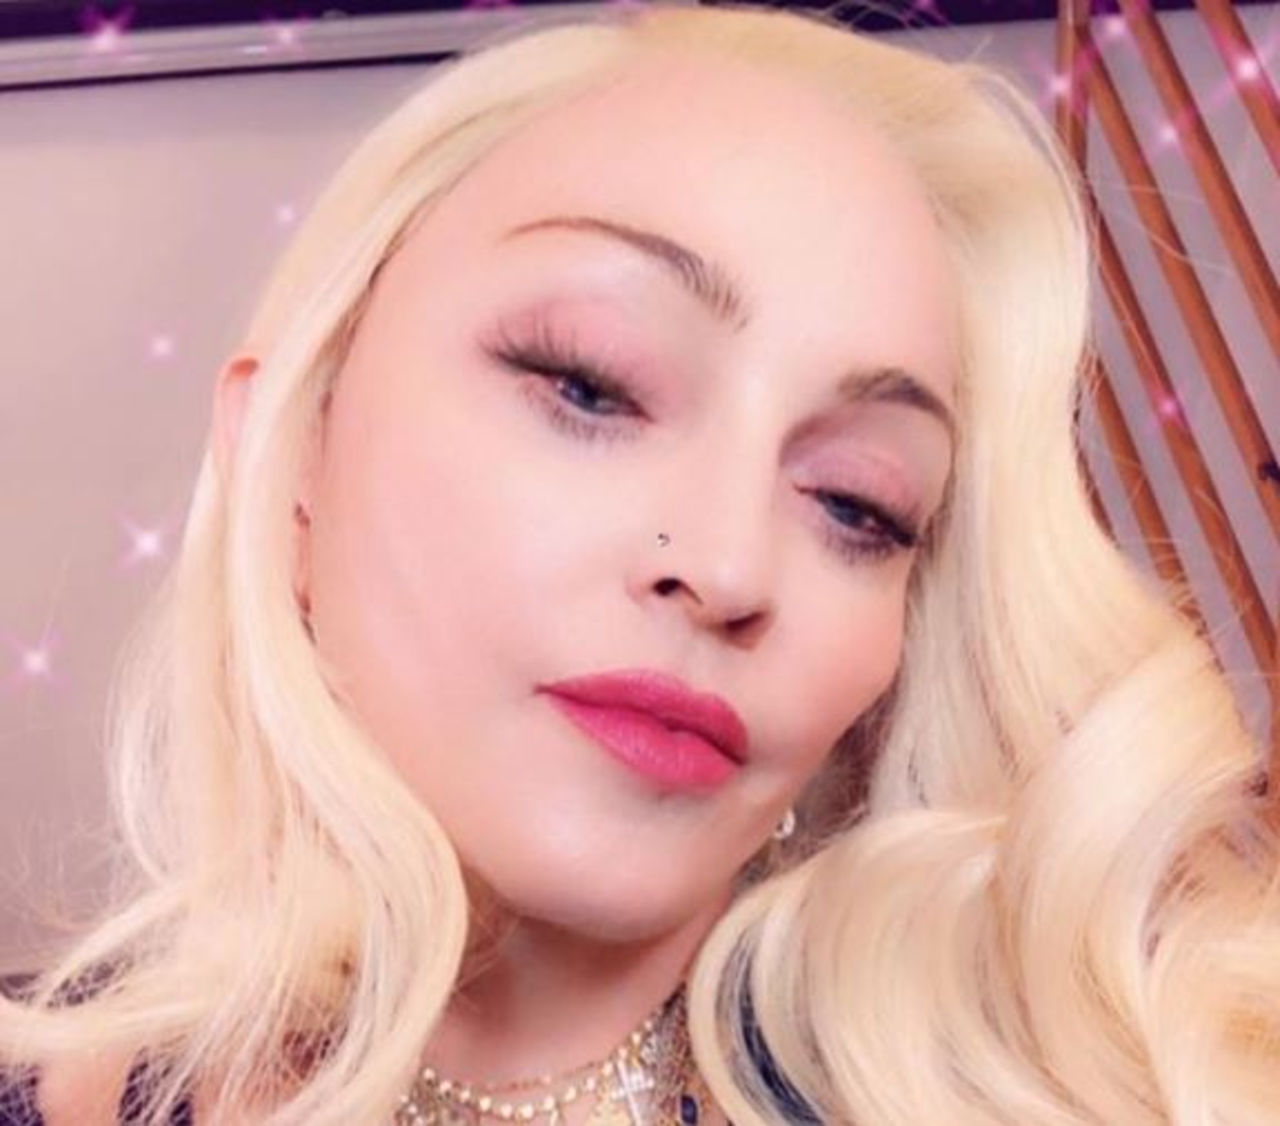 Певица Мадонна и организаторы'Евровидения-2019 договорились об участии поп-дивы на мероприятии за колоссальный гонорар